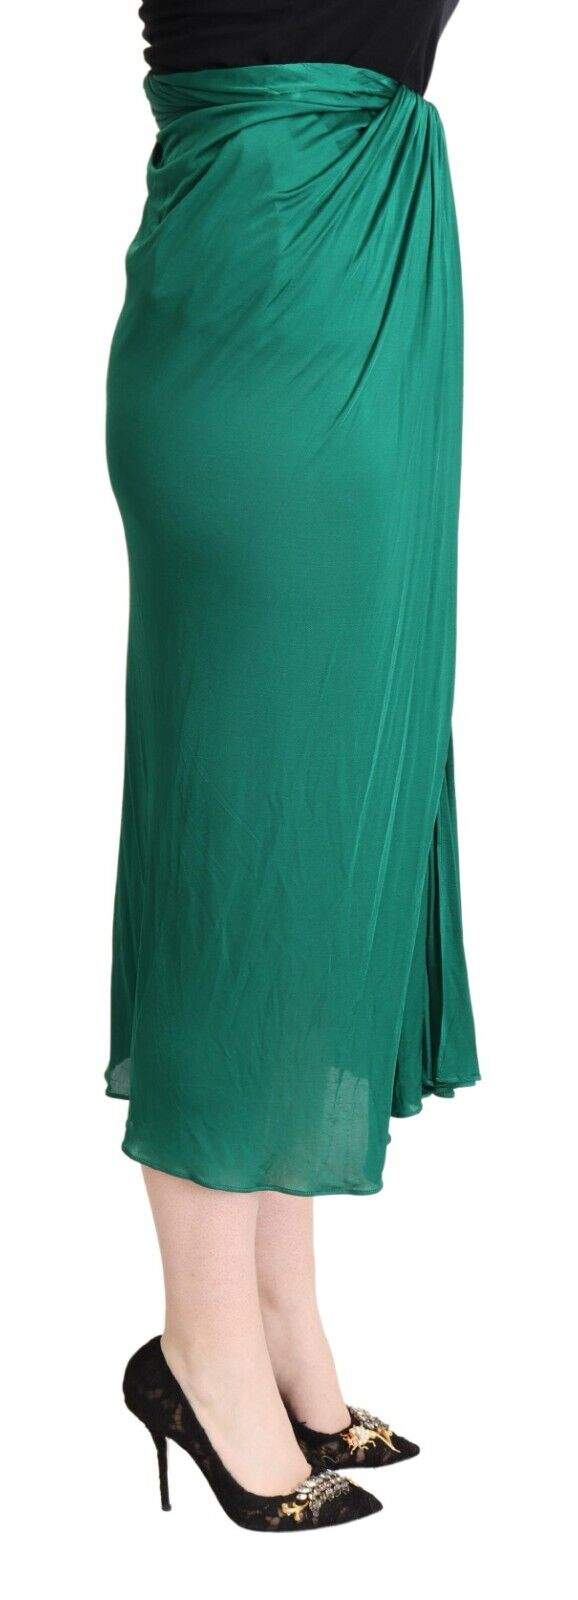 Dolce & Gabbana Dark Green High Waist Midi Pencil Cut Pleated Skirt Dolce & Gabbana, feed-1, Green, IT36|XXS, IT38|XS, IT40|S, IT42|M, IT44|L, IT46|XL, IT48|XXL, Skirts - Women - Clothing at SEYMAYKA